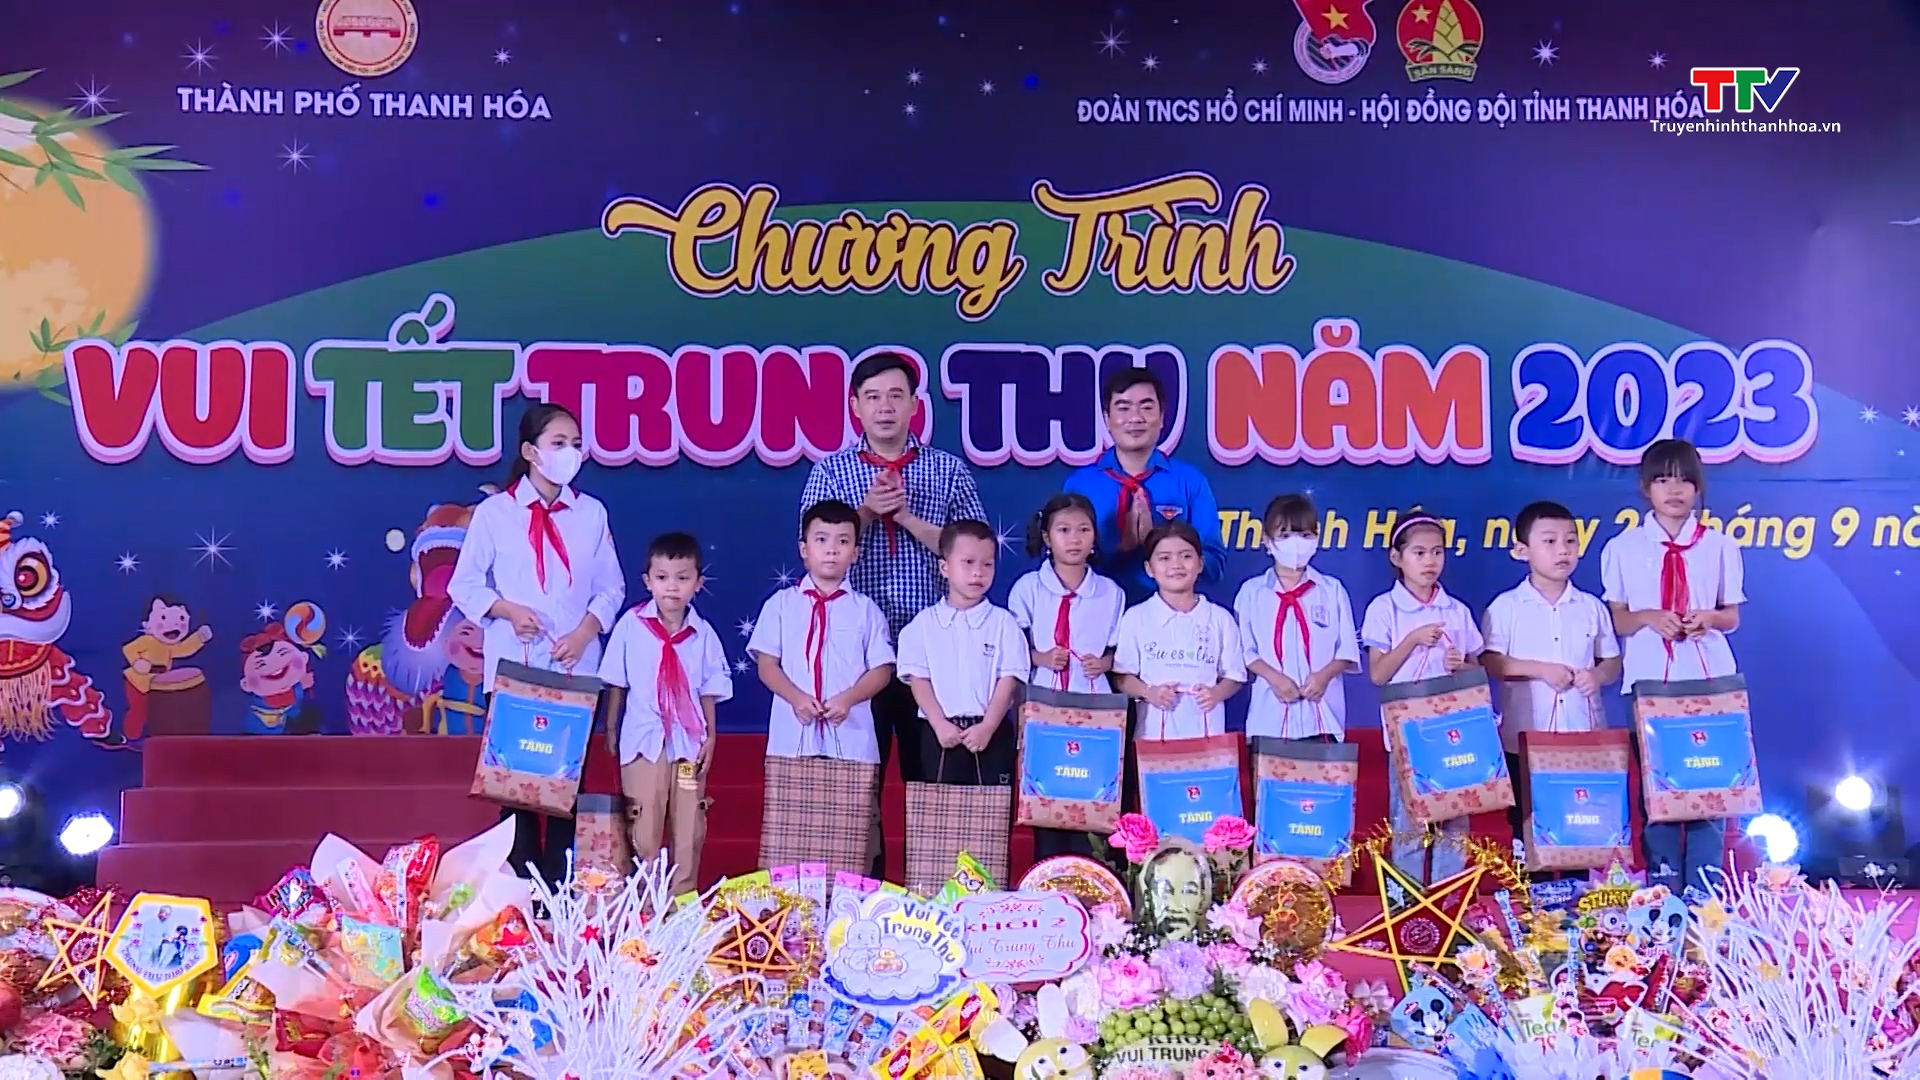 Thành phố Thanh Hoá tổ chức chương trình “Vui Tết Trung thu” năm 2023 - Ảnh 3.